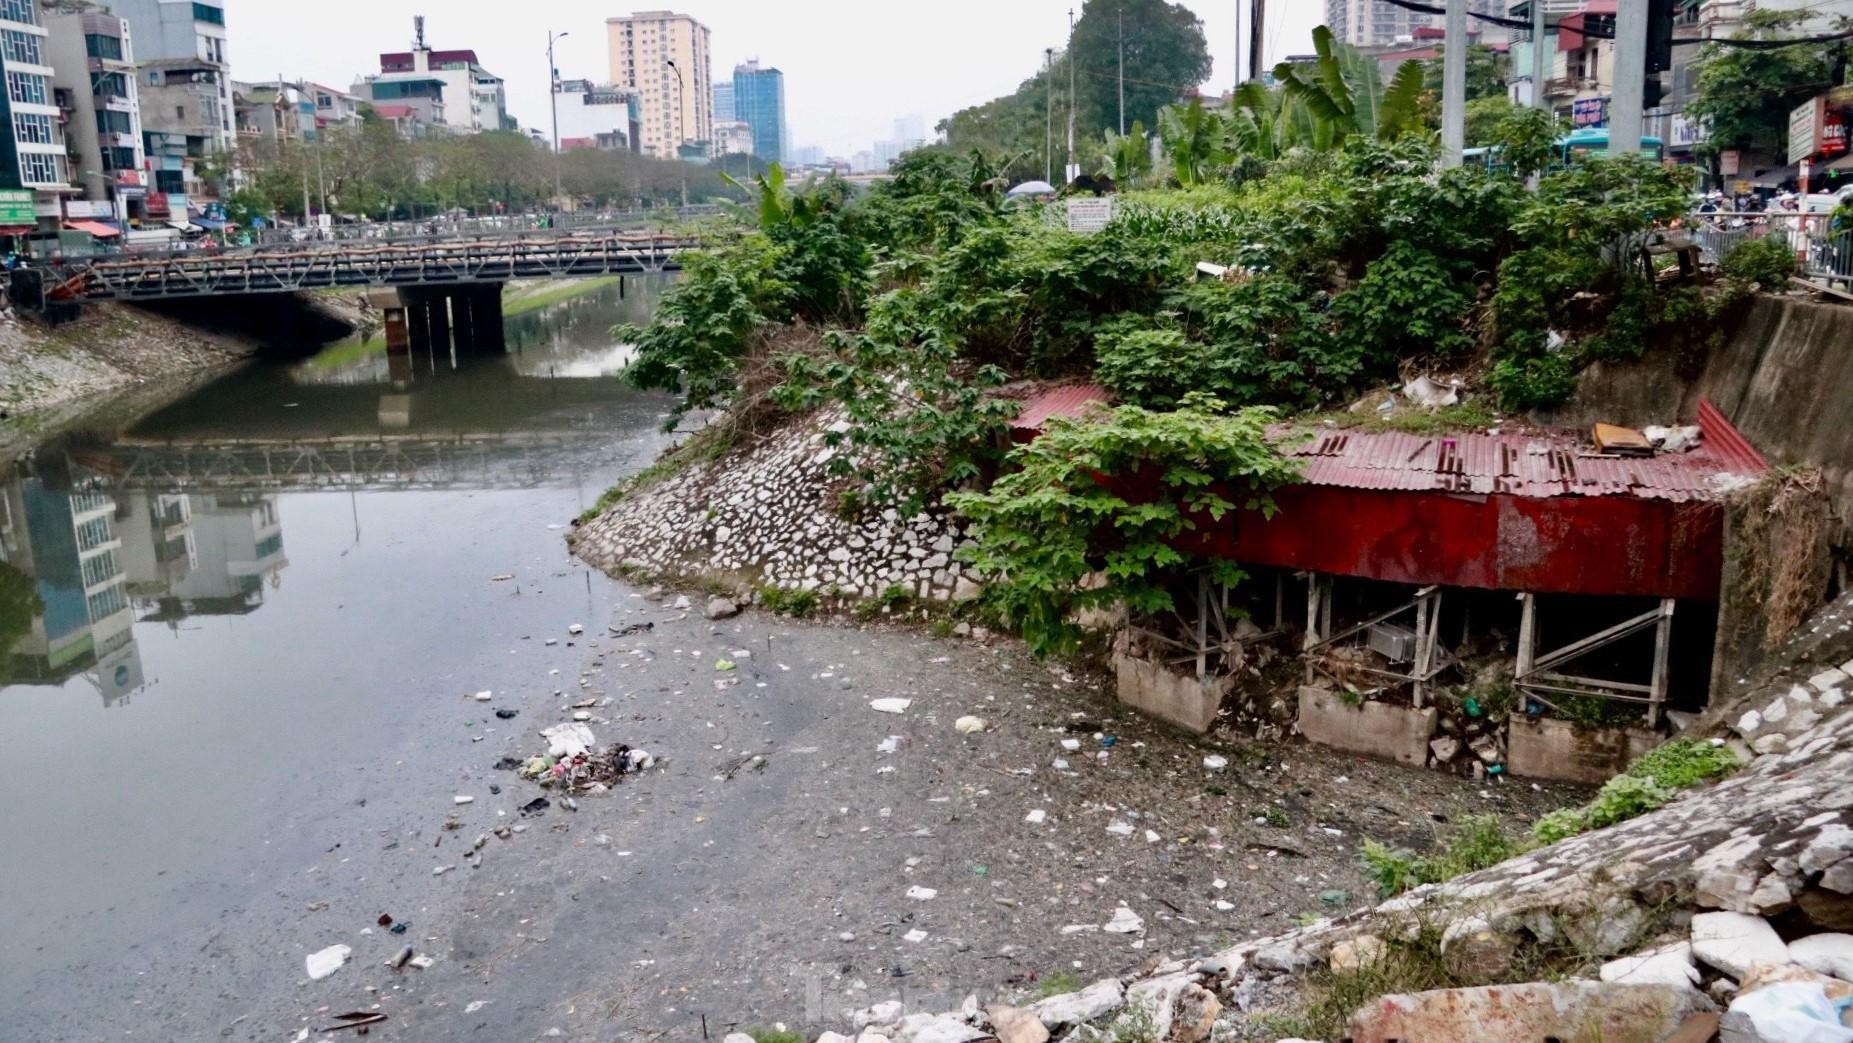 Hãy xem hình ảnh liên quan đến ô nhiễm môi trường nước để nhận ra tầm quan trọng của việc bảo vệ nguồn tài nguyên quý giá này. Đồng thời, hình ảnh đó cũng mang đến những thông tin mới nhất về tình hình ô nhiễm môi trường nước tại Việt Nam.